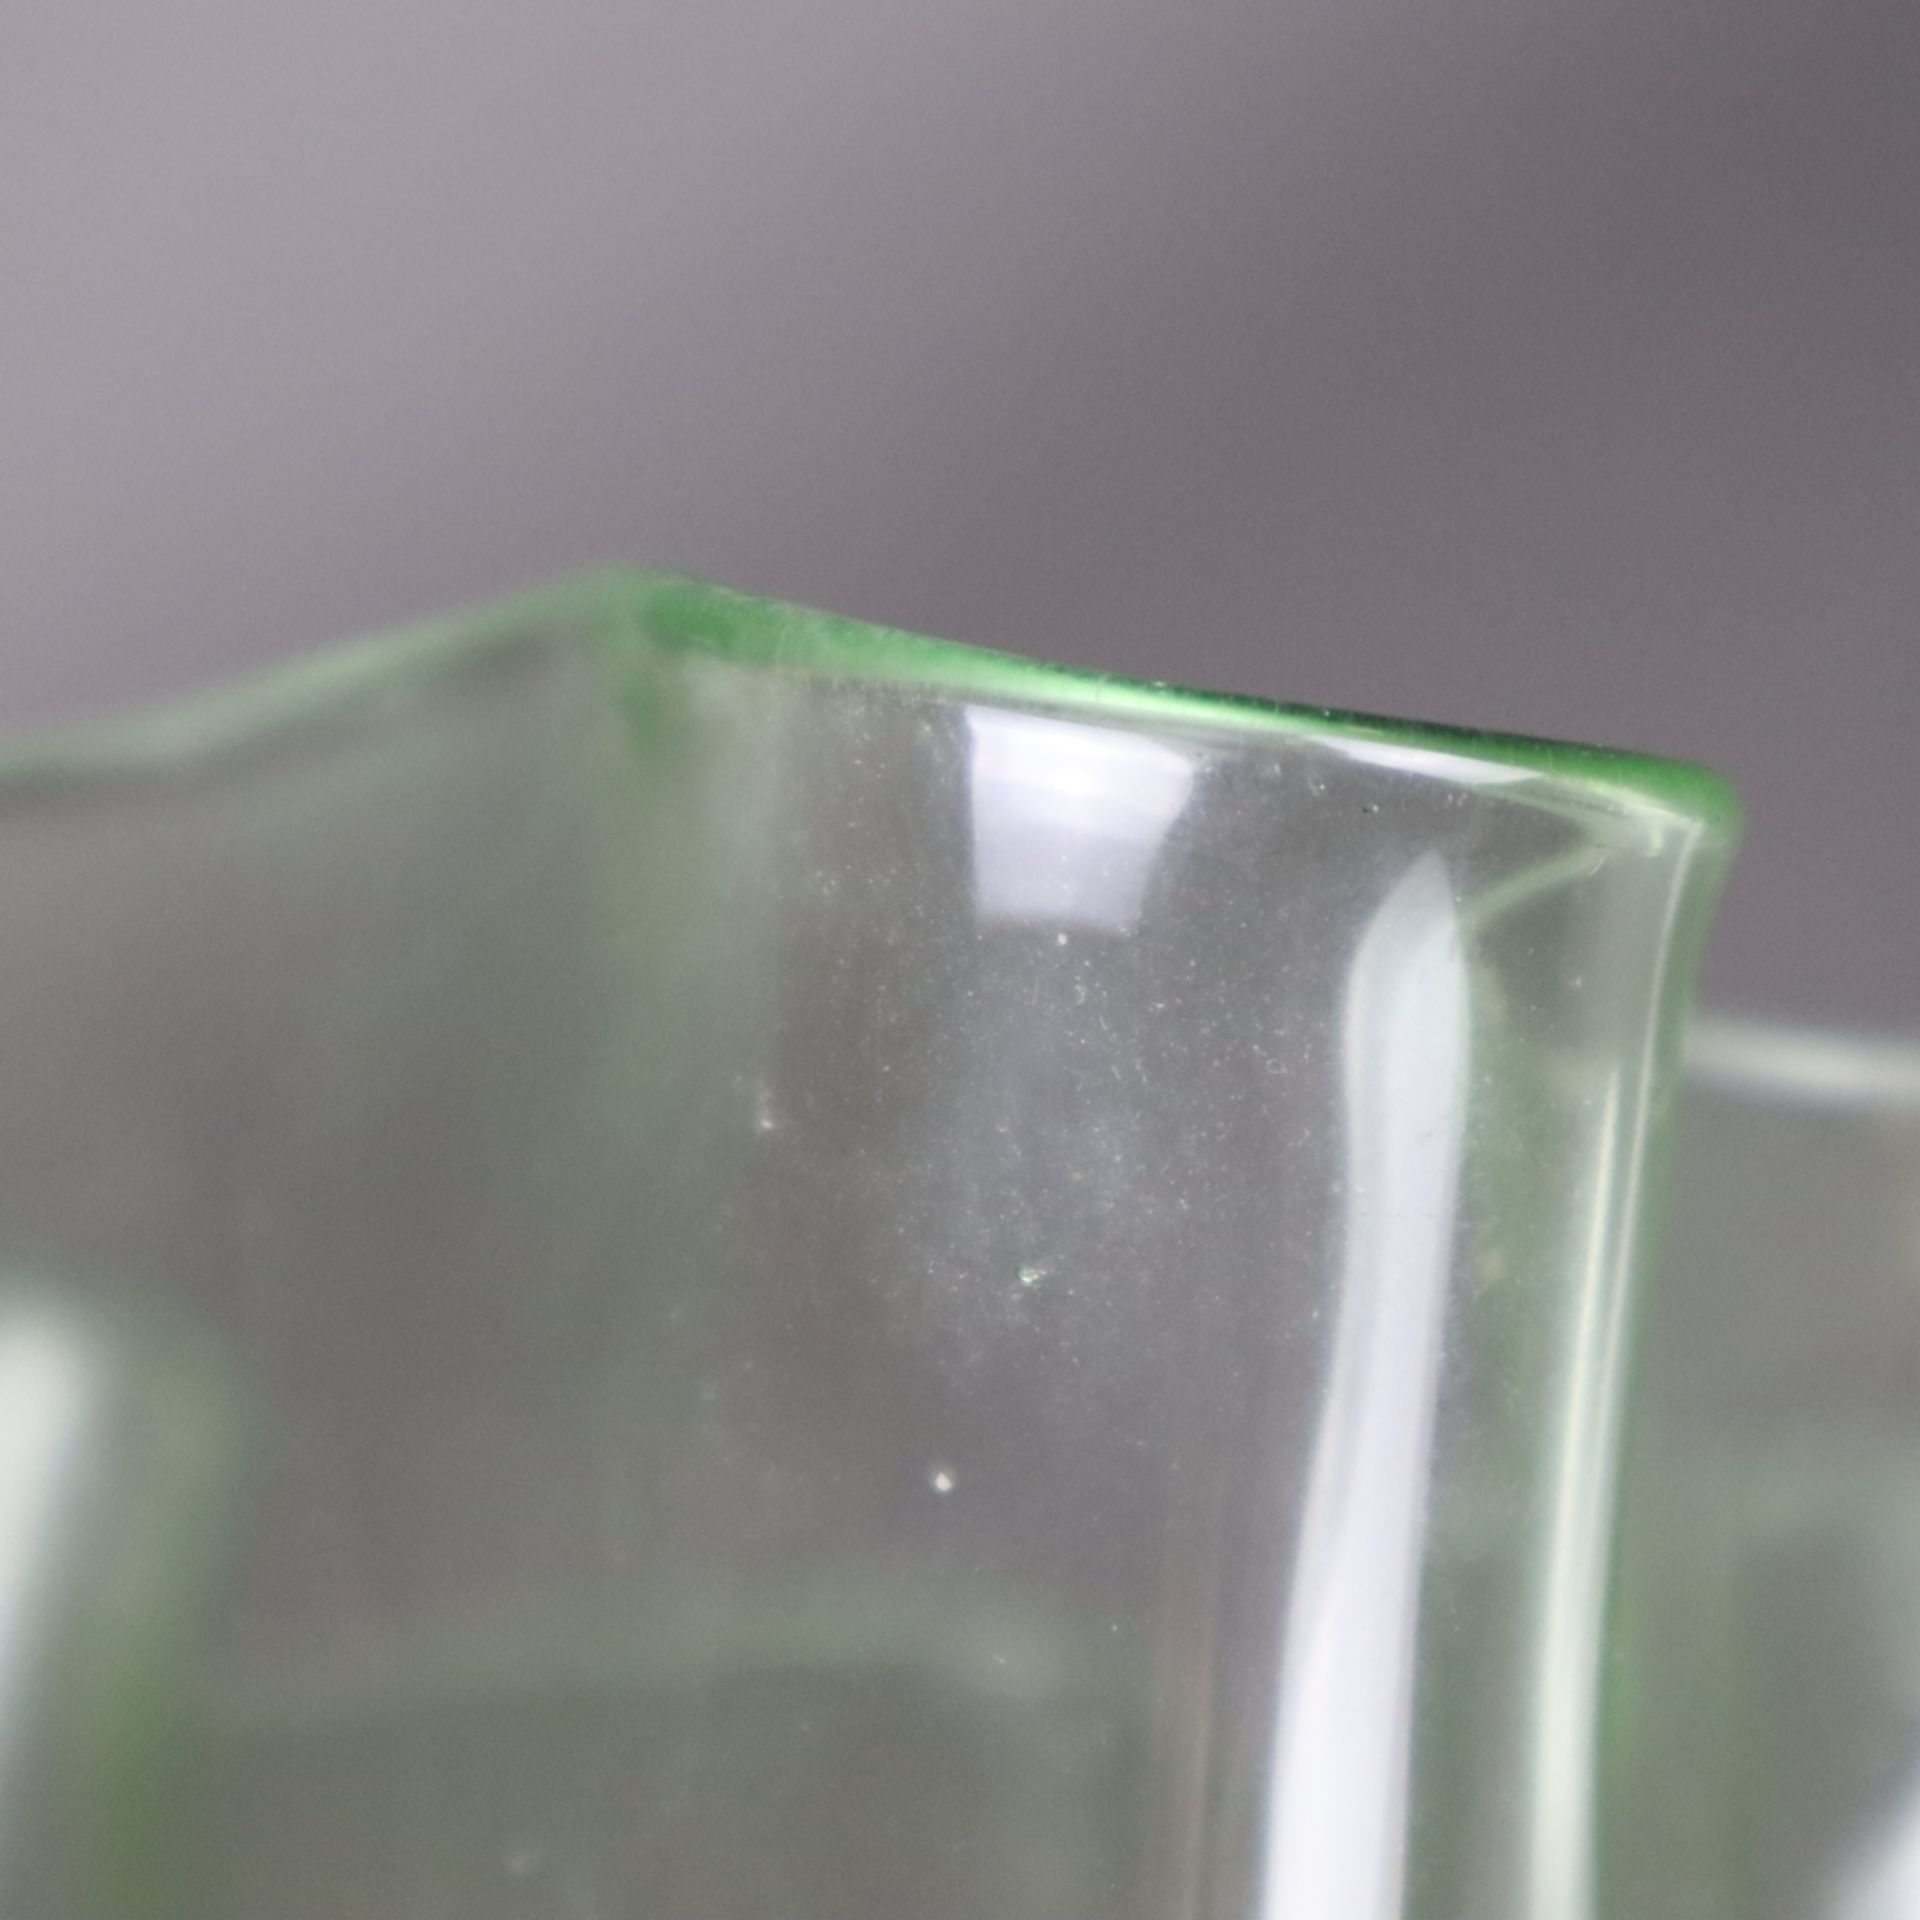 Ziervase in "Fazzoletto"- Form - Taschentuchvase, grünes Glas, mehrfach gefaltete Wandung, Boden - Bild 6 aus 7